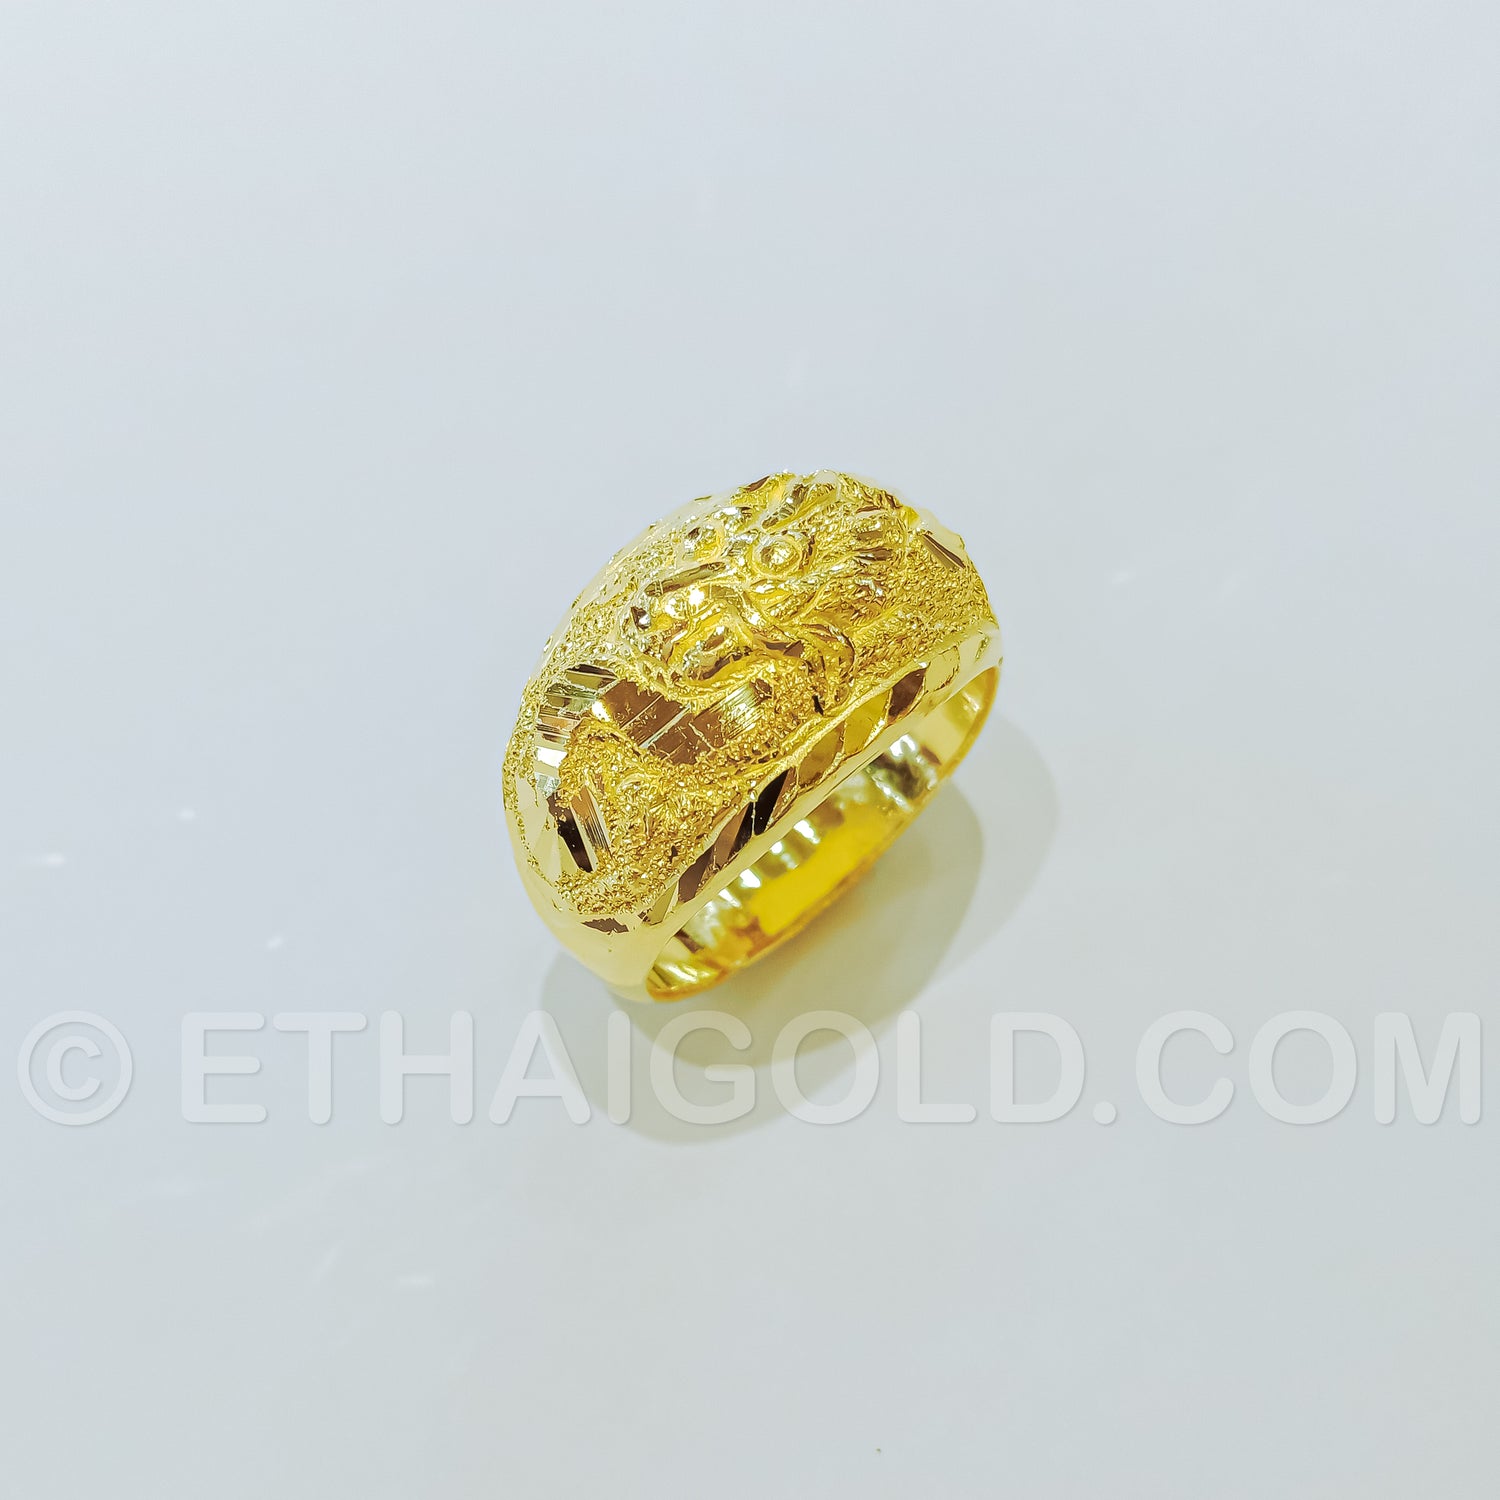 1 Baht Gold Rings